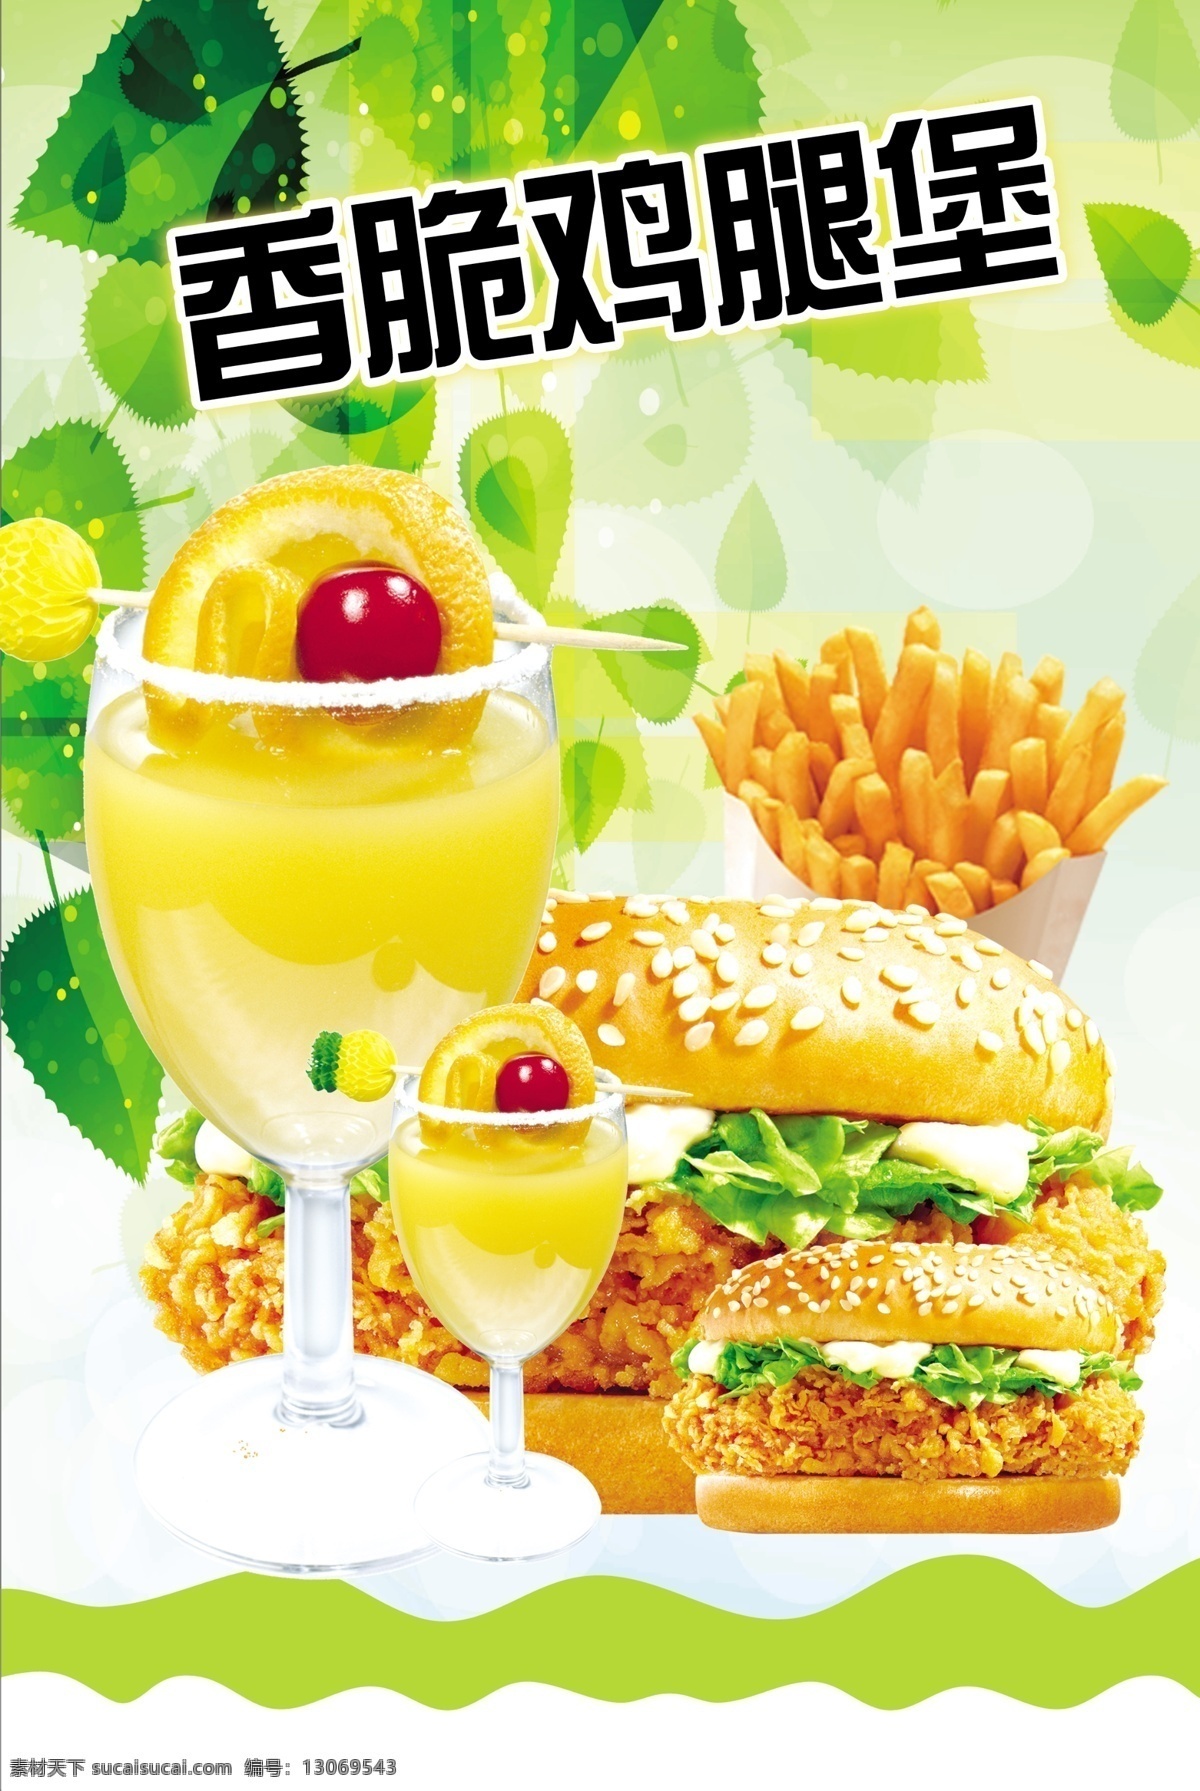 香脆鸡腿堡 署条 橙汁 绿色背景 绿叶背景 饮品单 宣传海报 dm宣传单